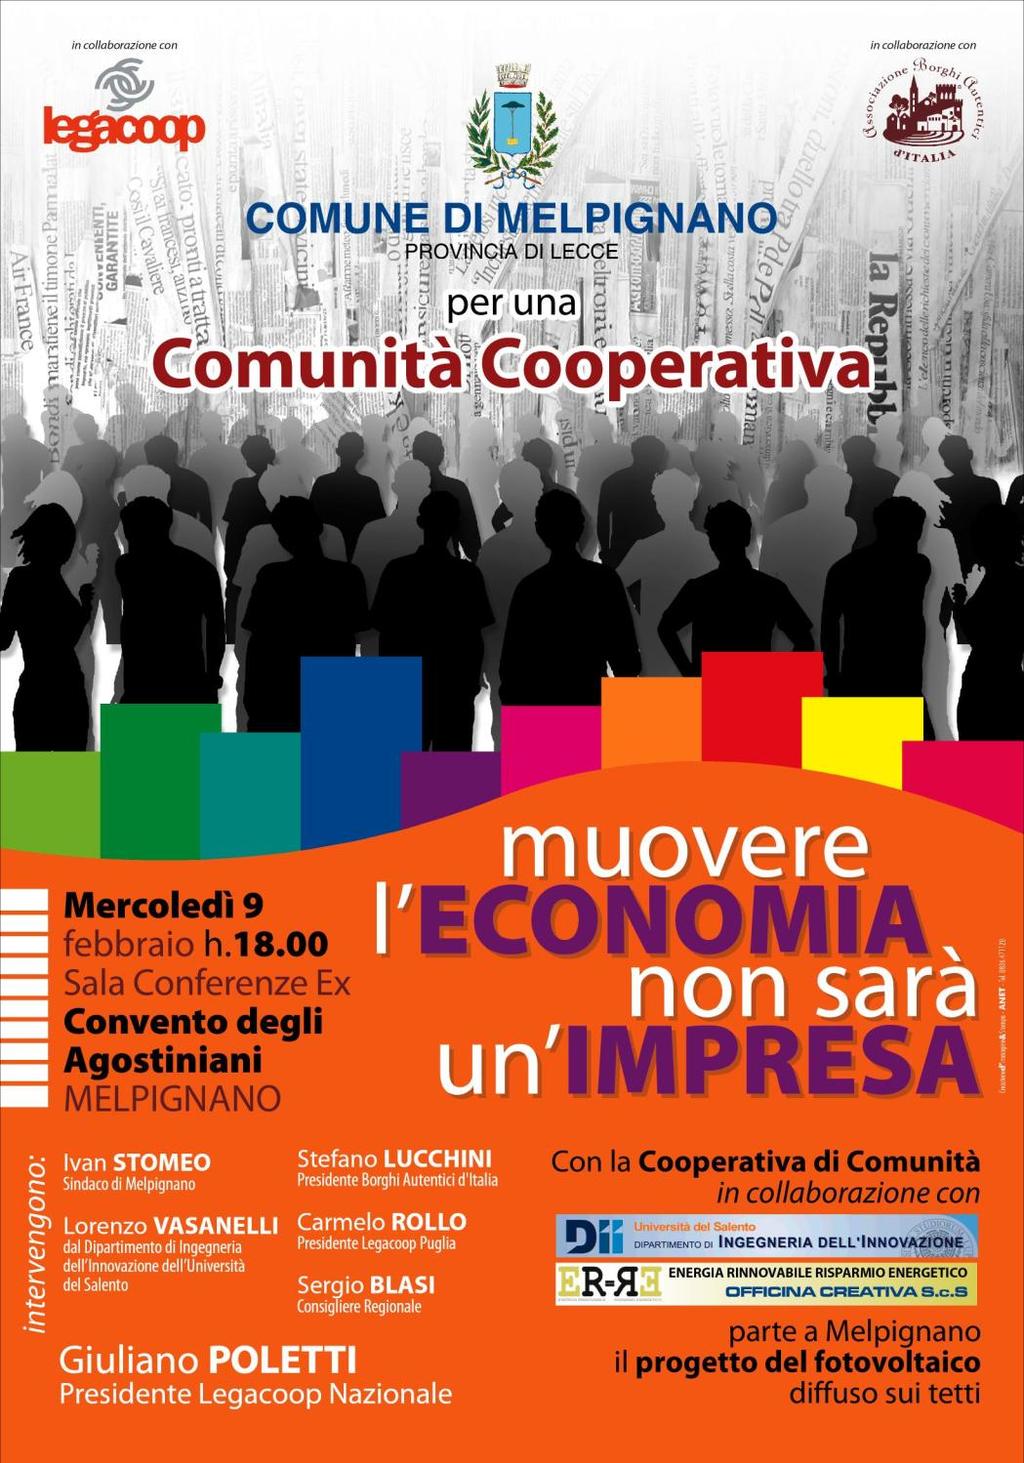 9 febbraio 2011 Assemblea di presentazione del progetto della coop di comunità con la